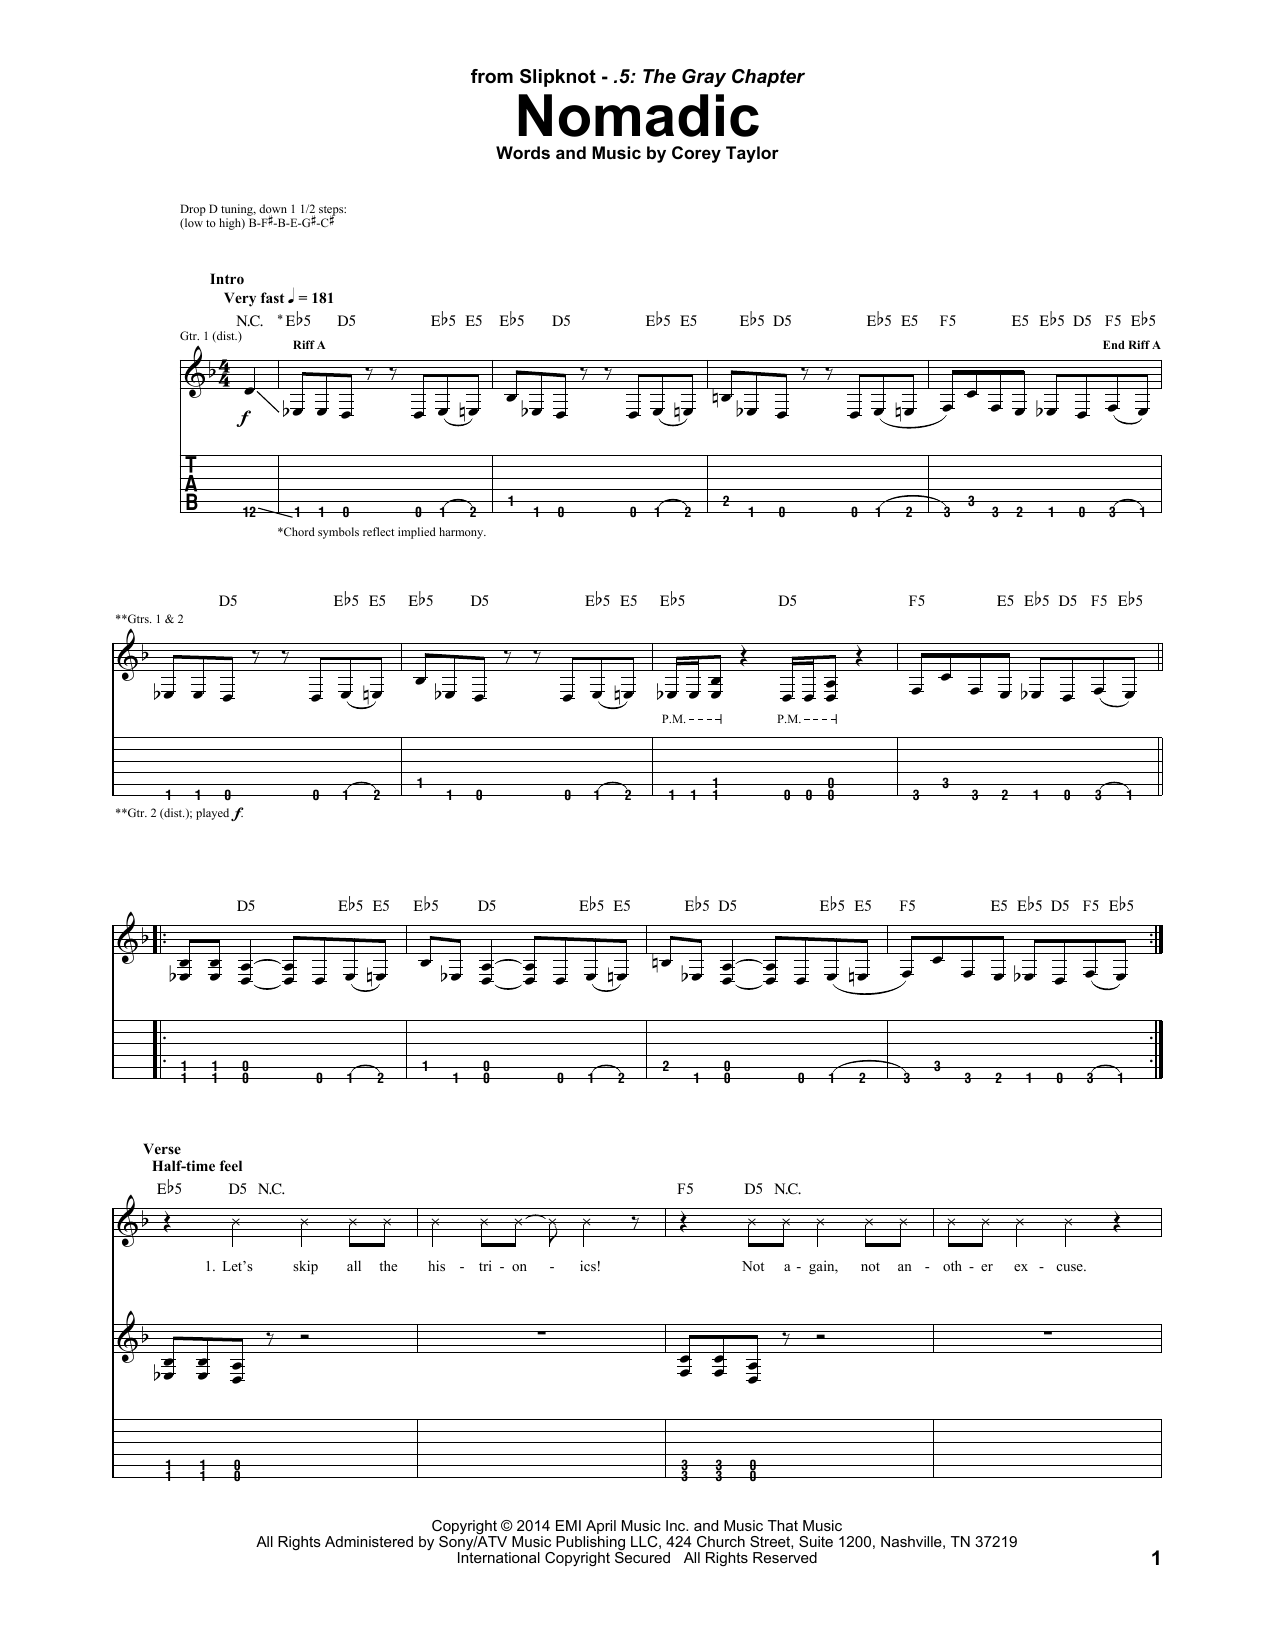 Slipknot Nomadic Sheet Music Notes & Chords for Guitar Tab - Download or Print PDF